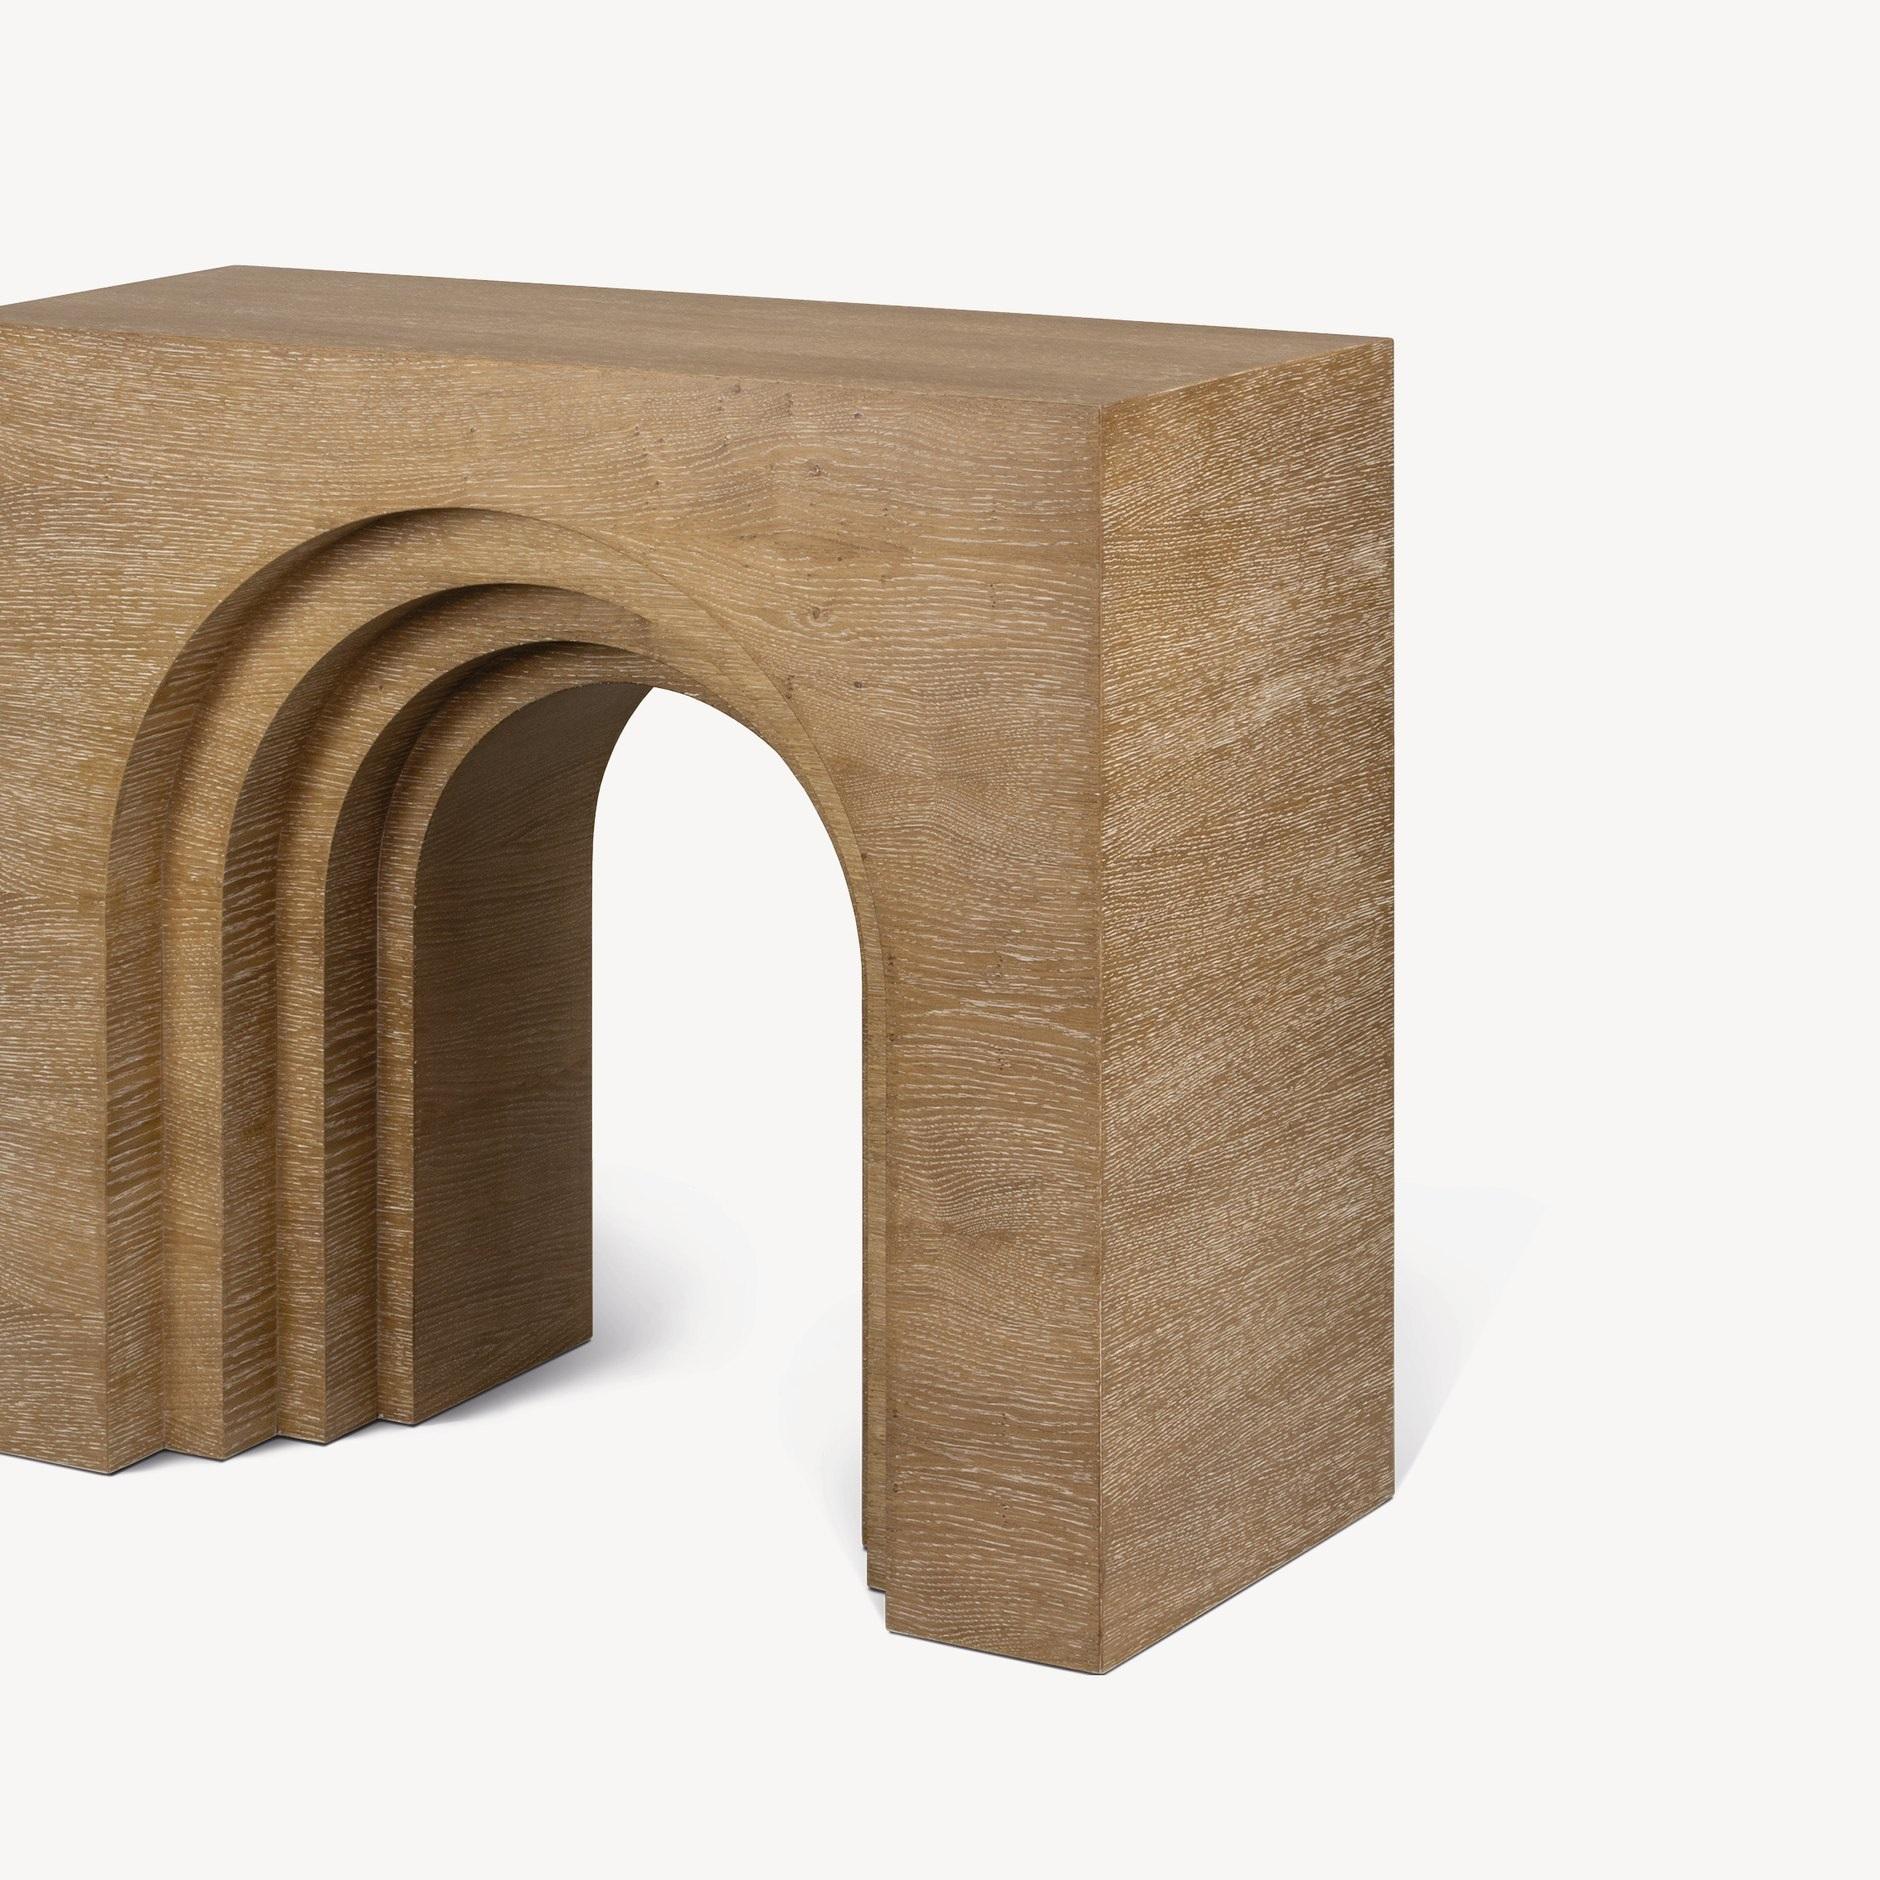 Cette console est fabriquée en bois de chêne chaulé et a une forme particulière, arquée ou en pont. La table console présente une finition lisse et polie et repose sur deux pieds élancés. Elle se caractérise par ses formes organiques et